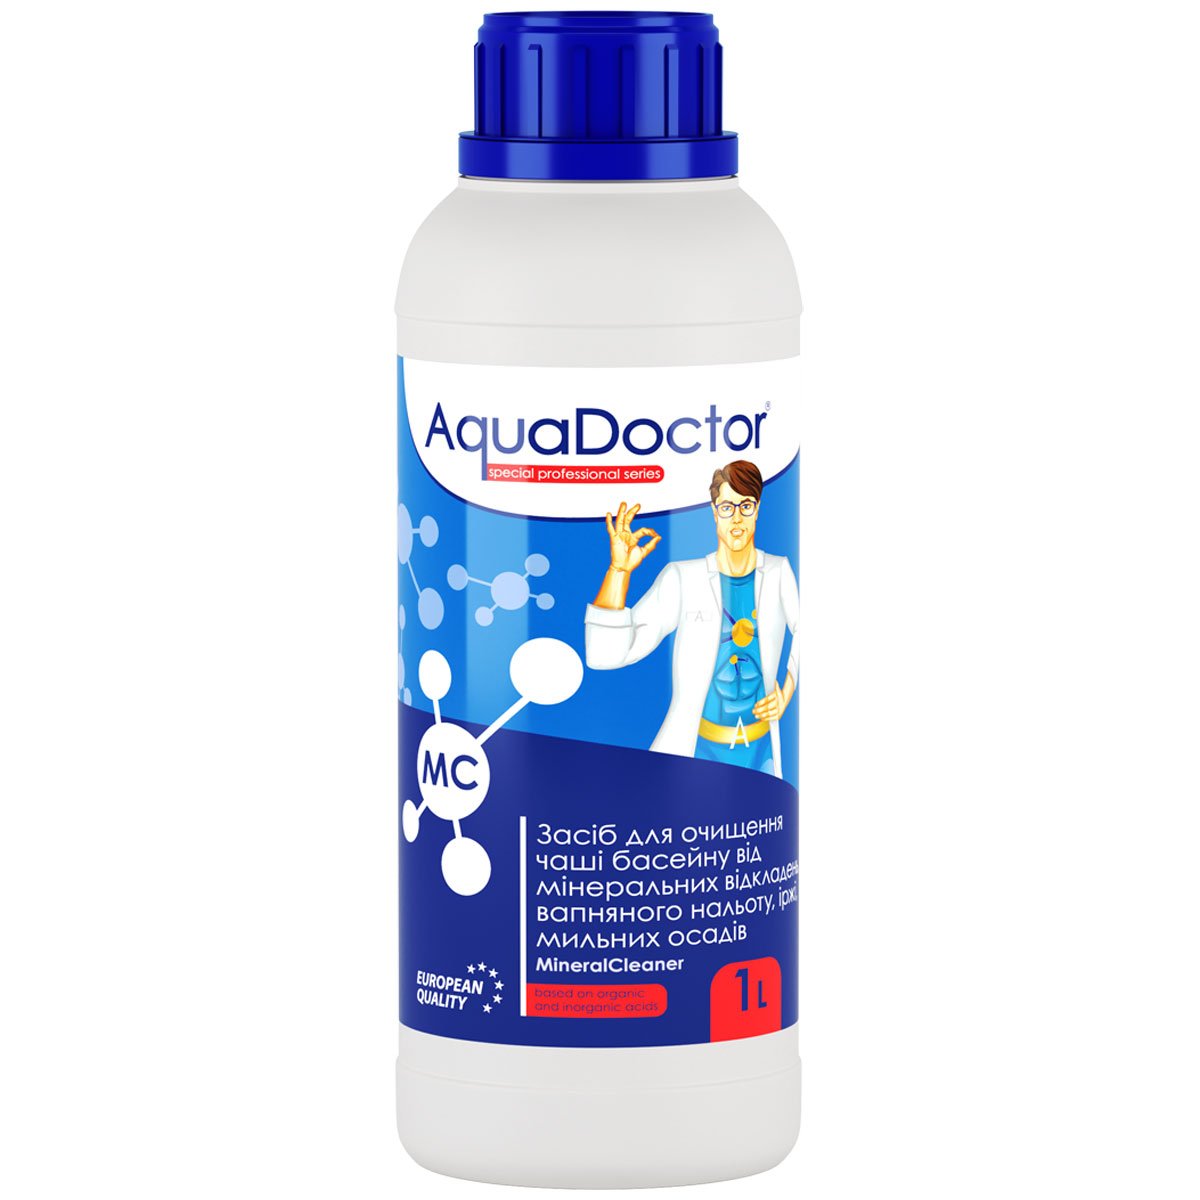 Засіб для чищення чаші басейну AquaDoctor MC MineralCleaner 1 л